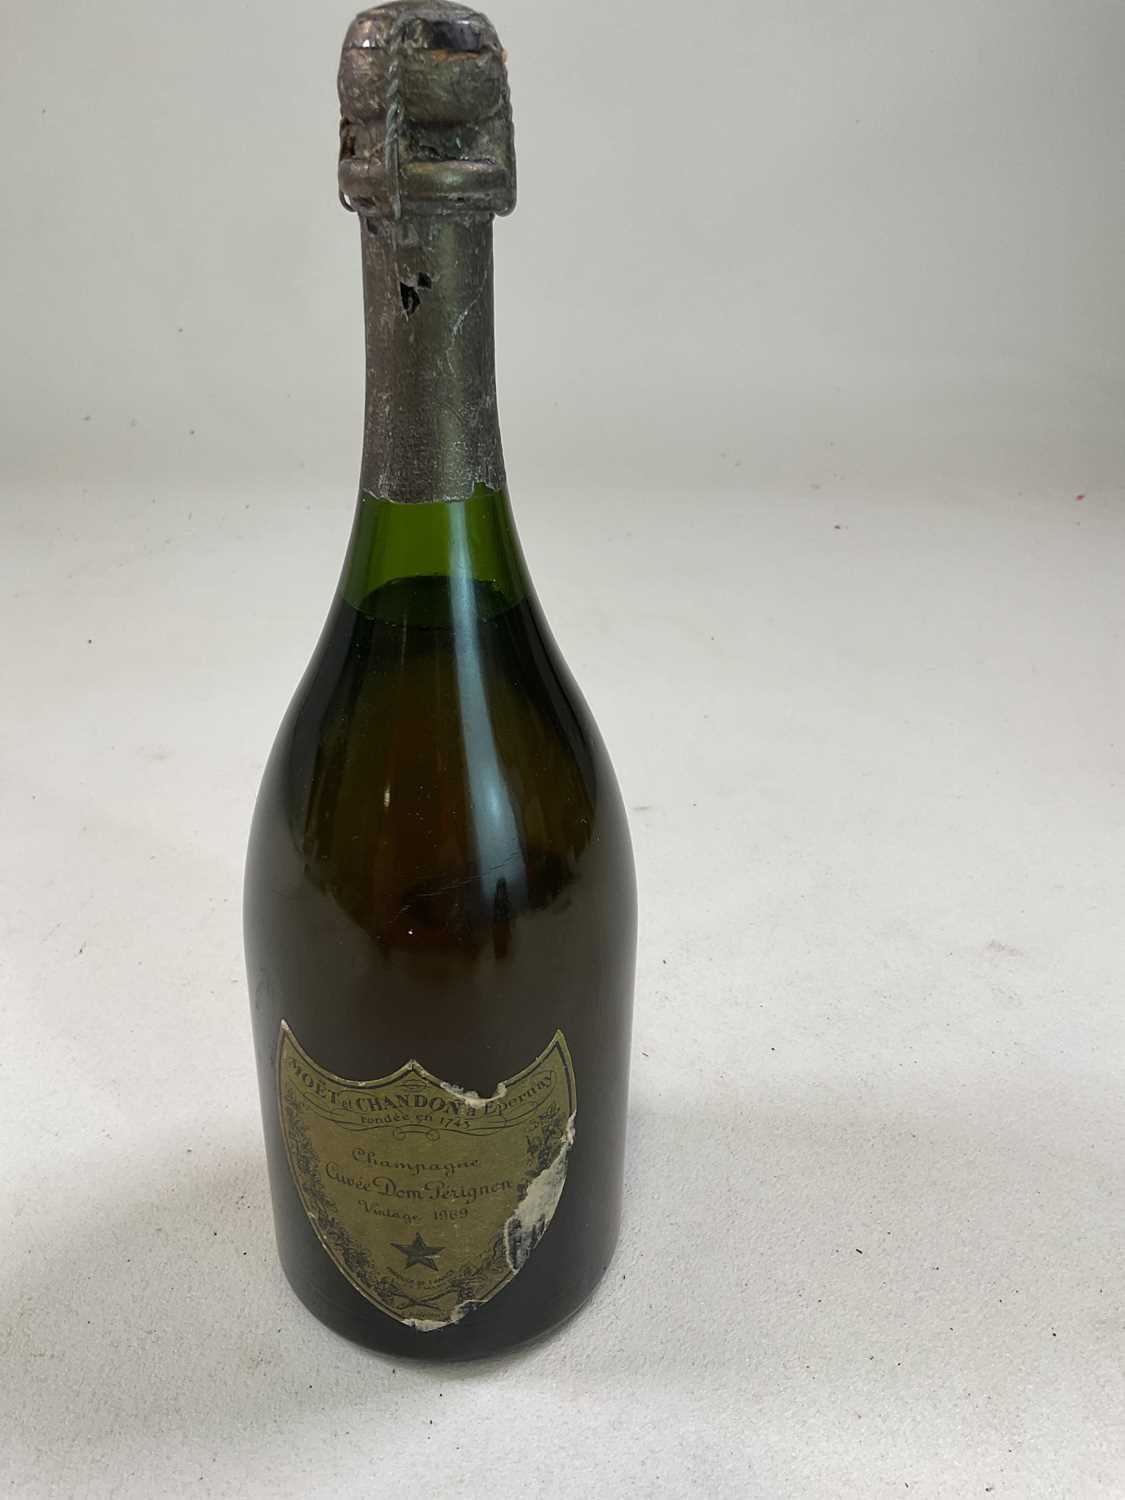 CHAMPAGNE; a bottle of Dom Perignon 1969 Champagne.